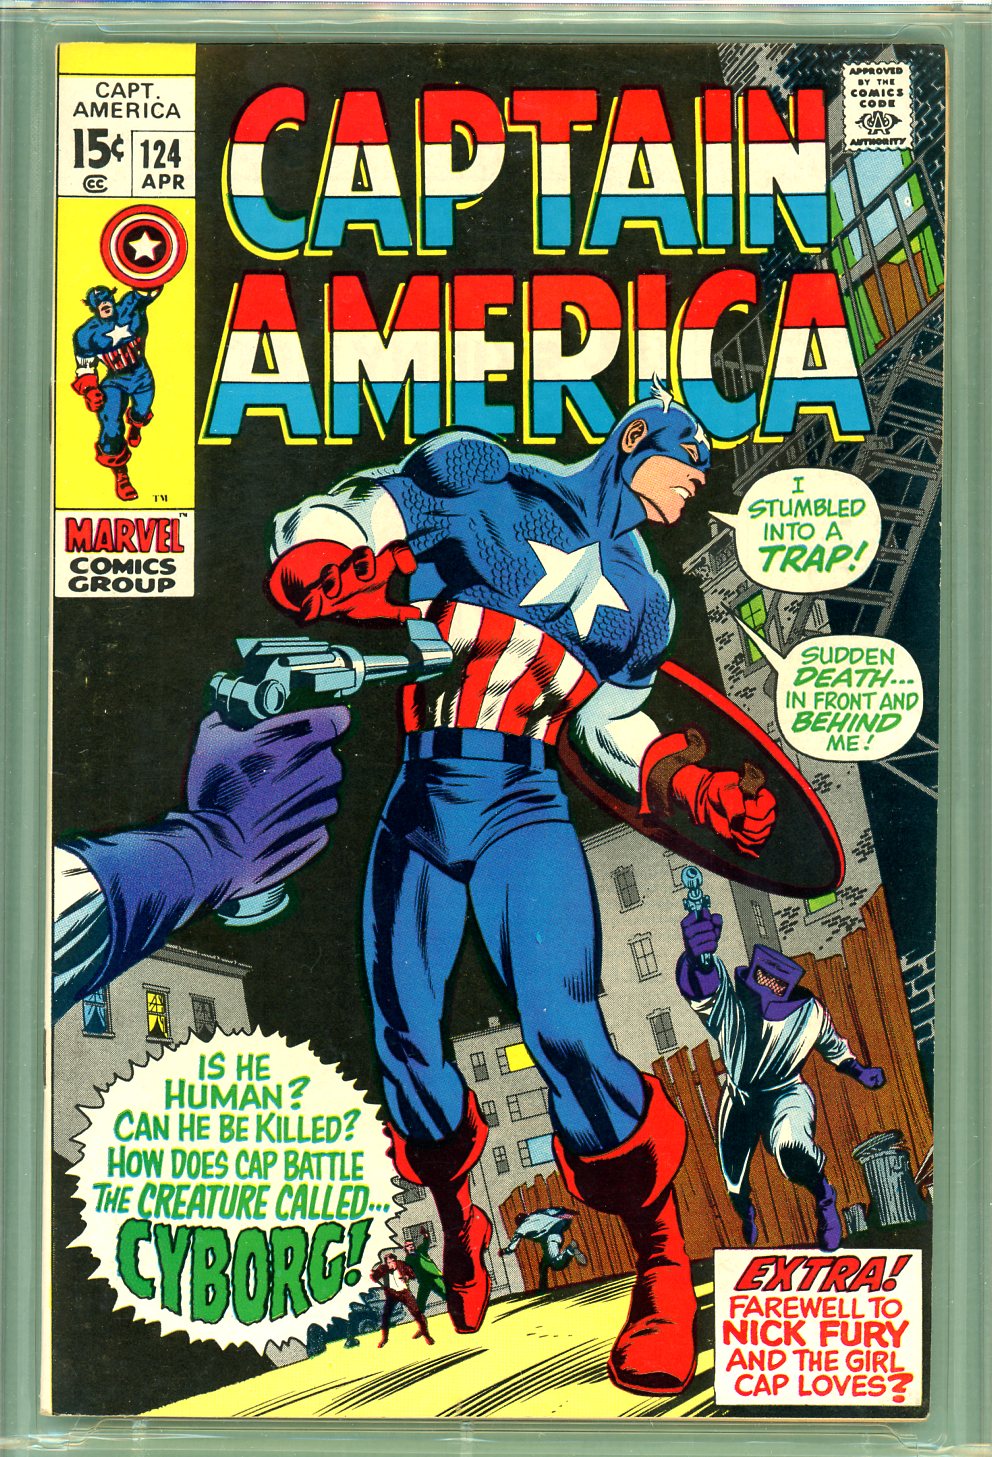 Marvel Comics Captain America Underoos Medium NIP Unused 